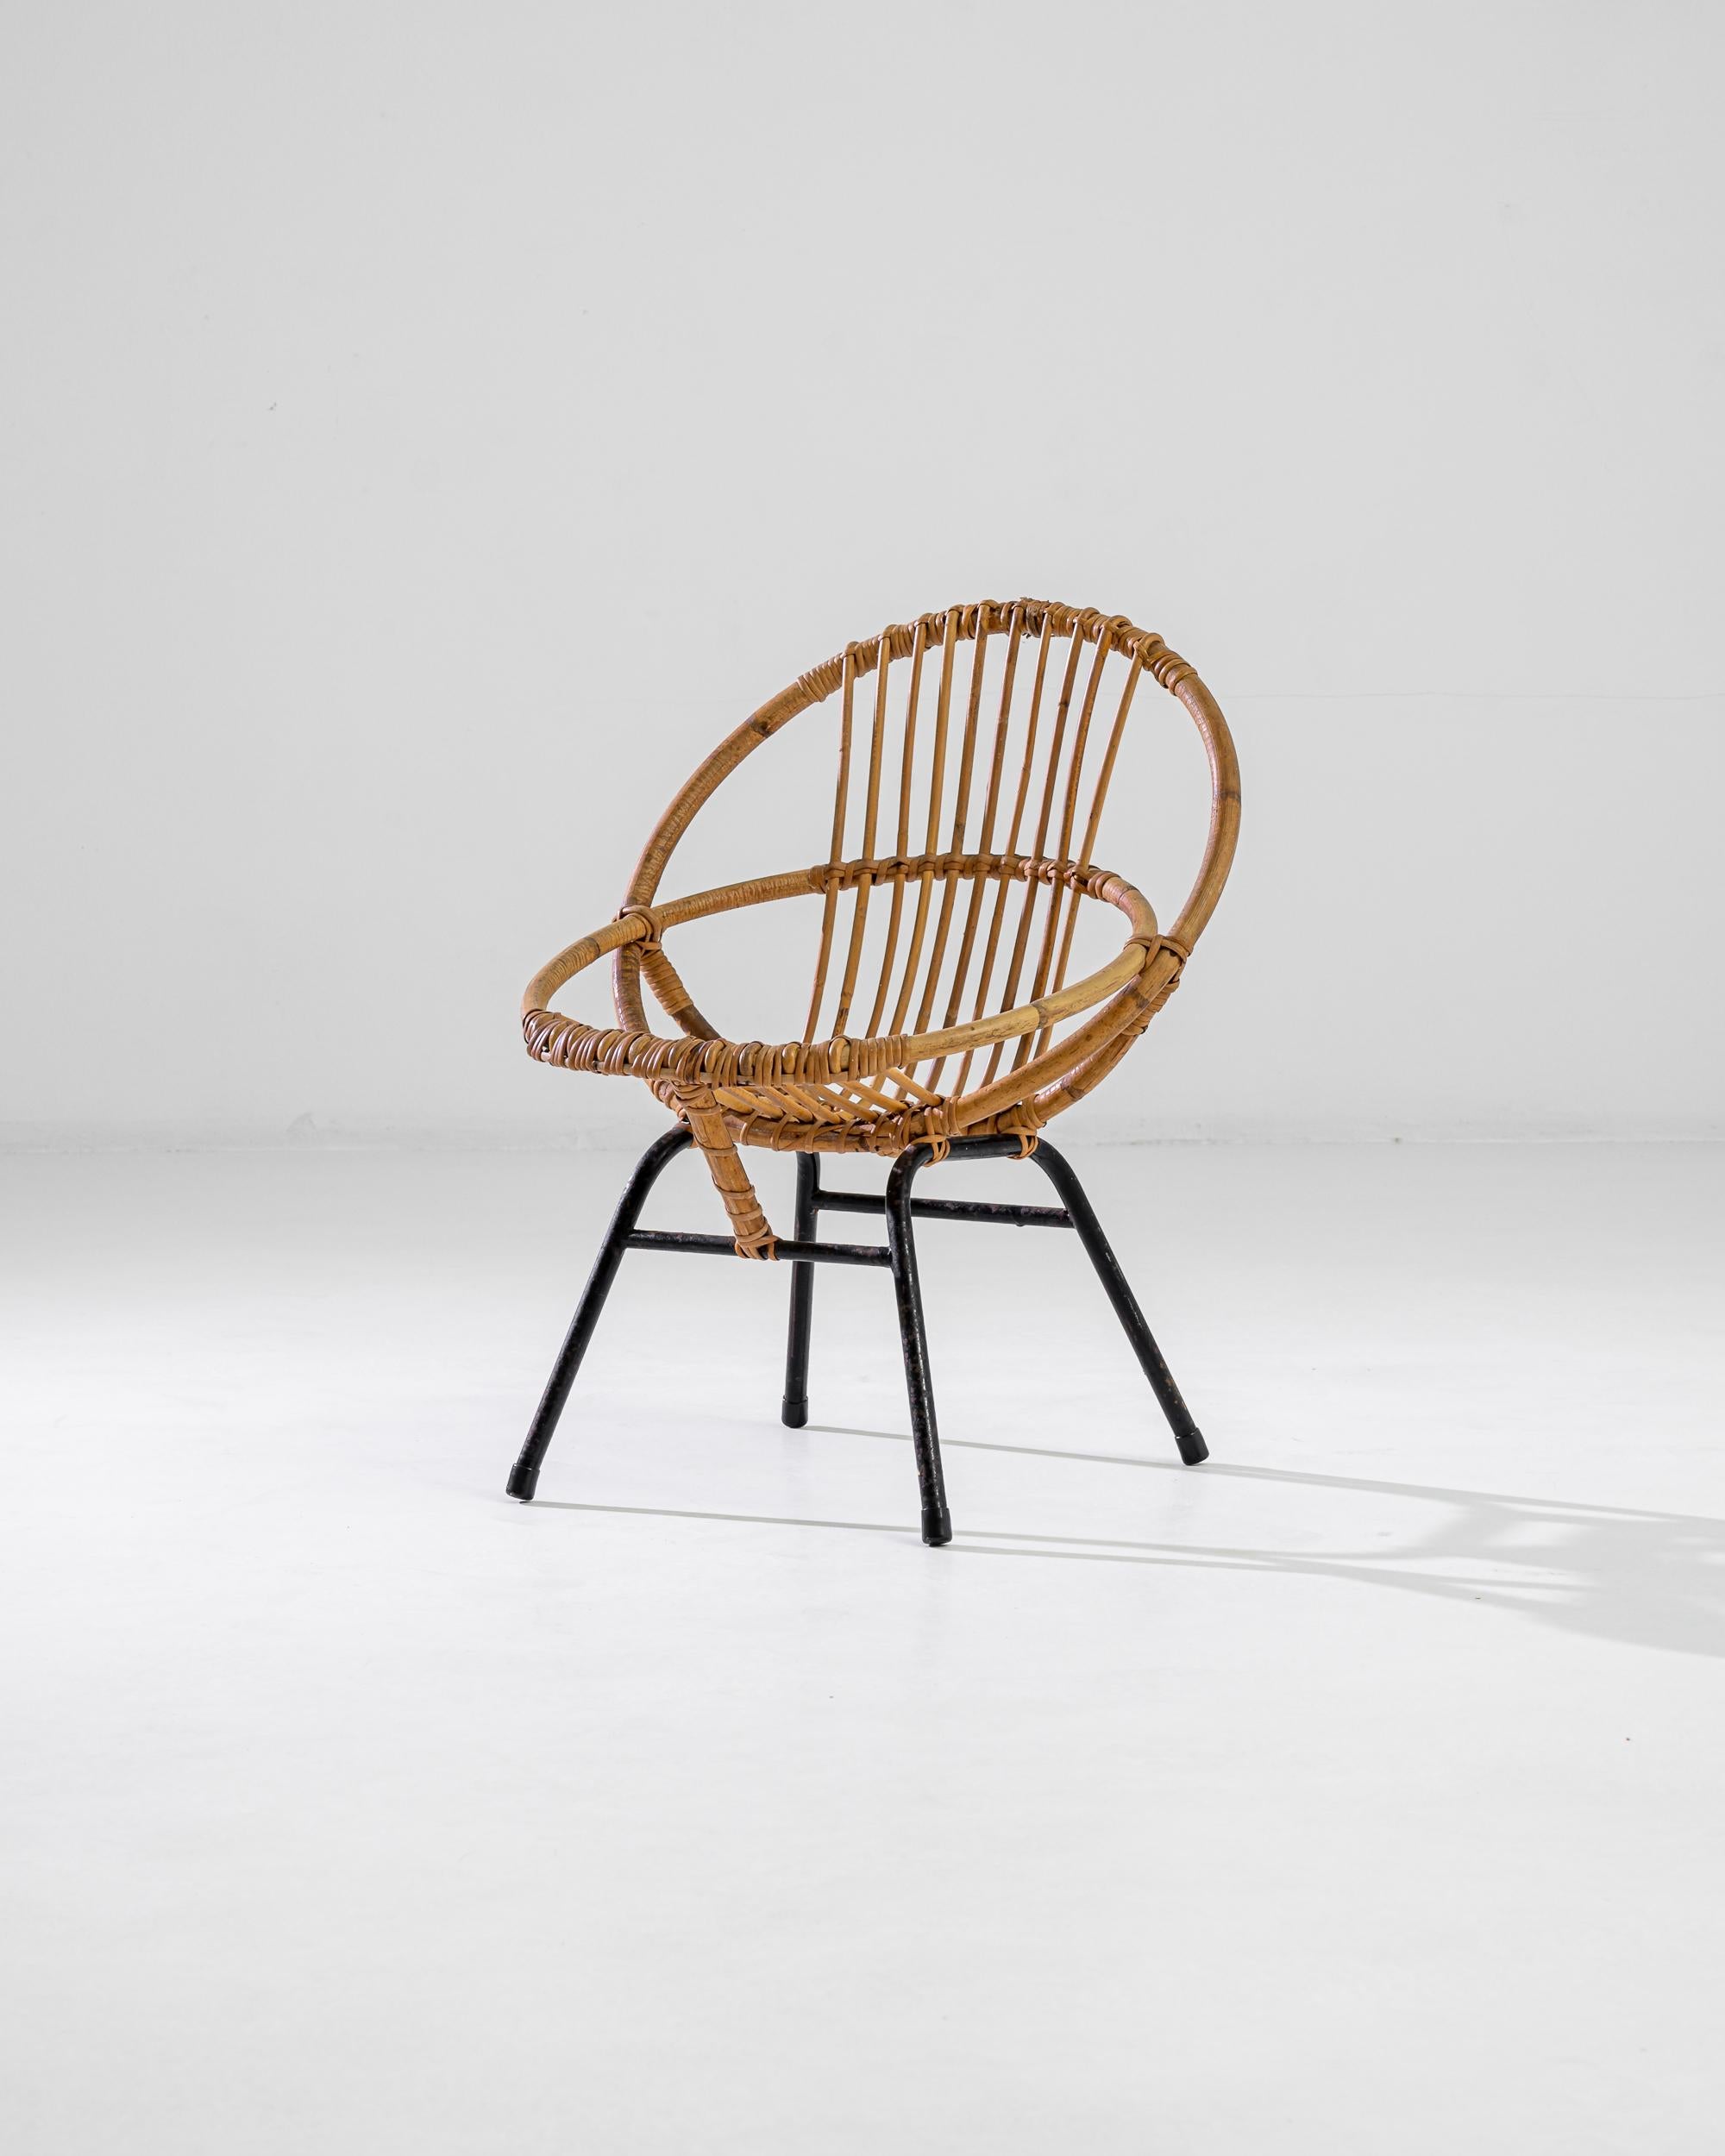 Entdecken Sie den Charme vergangener Eleganz mit unserem French Bamboo Chair aus den 1960er Jahren, einem atemberaubenden Exemplar moderner Finesse aus der Mitte des Jahrhunderts. Dieser fachmännisch aus natürlichem Bambus gefertigte Stuhl verfügt